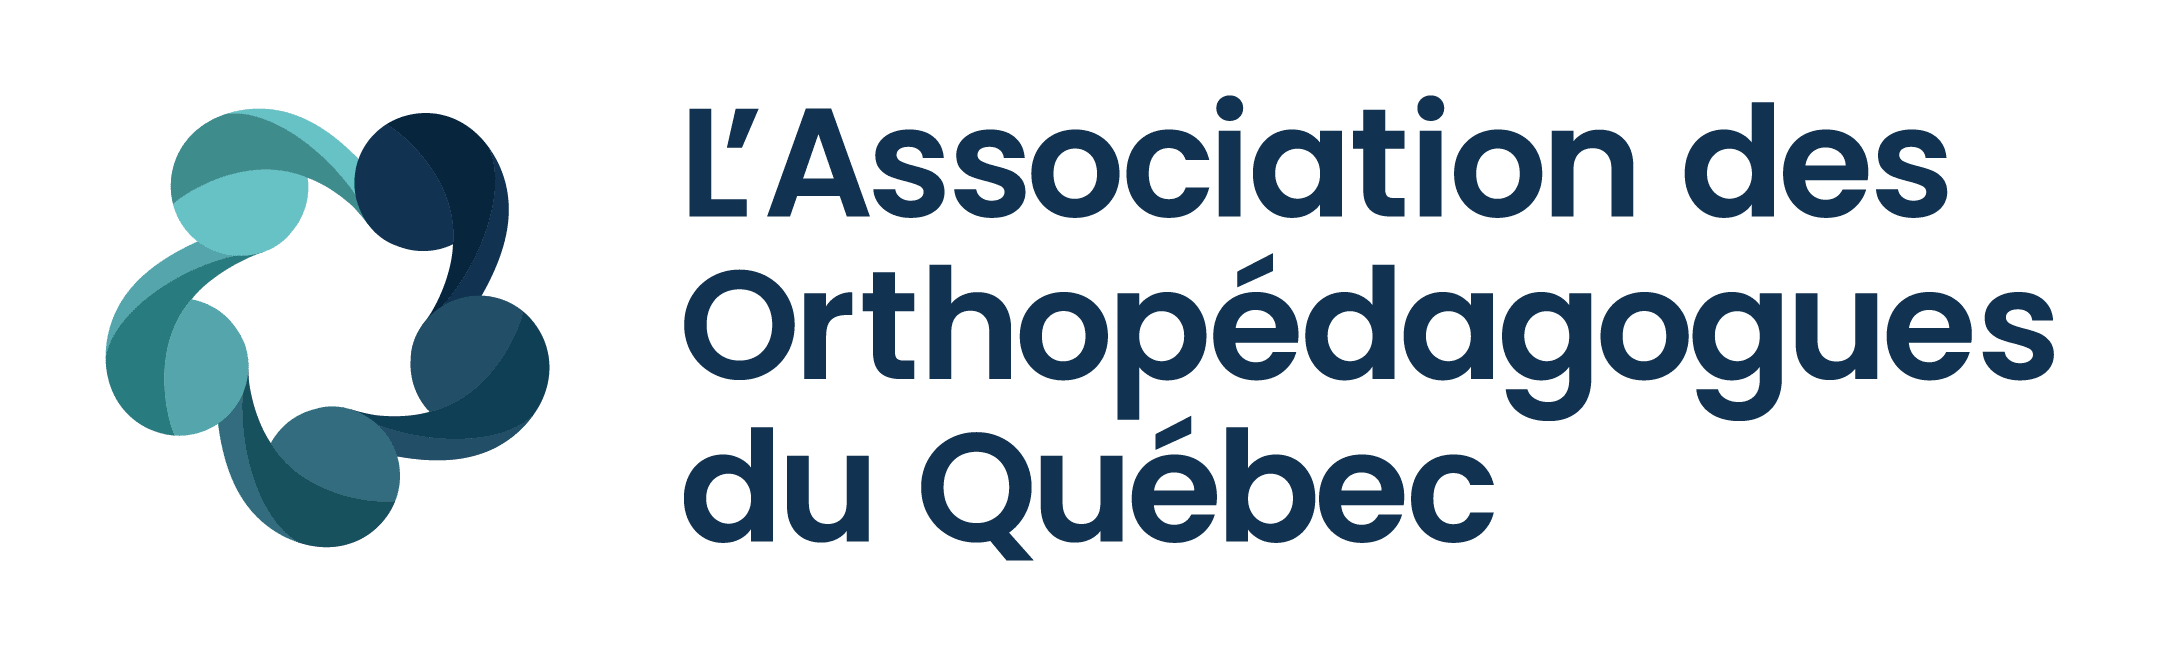 L’Association des Orthopédagogues du Québec